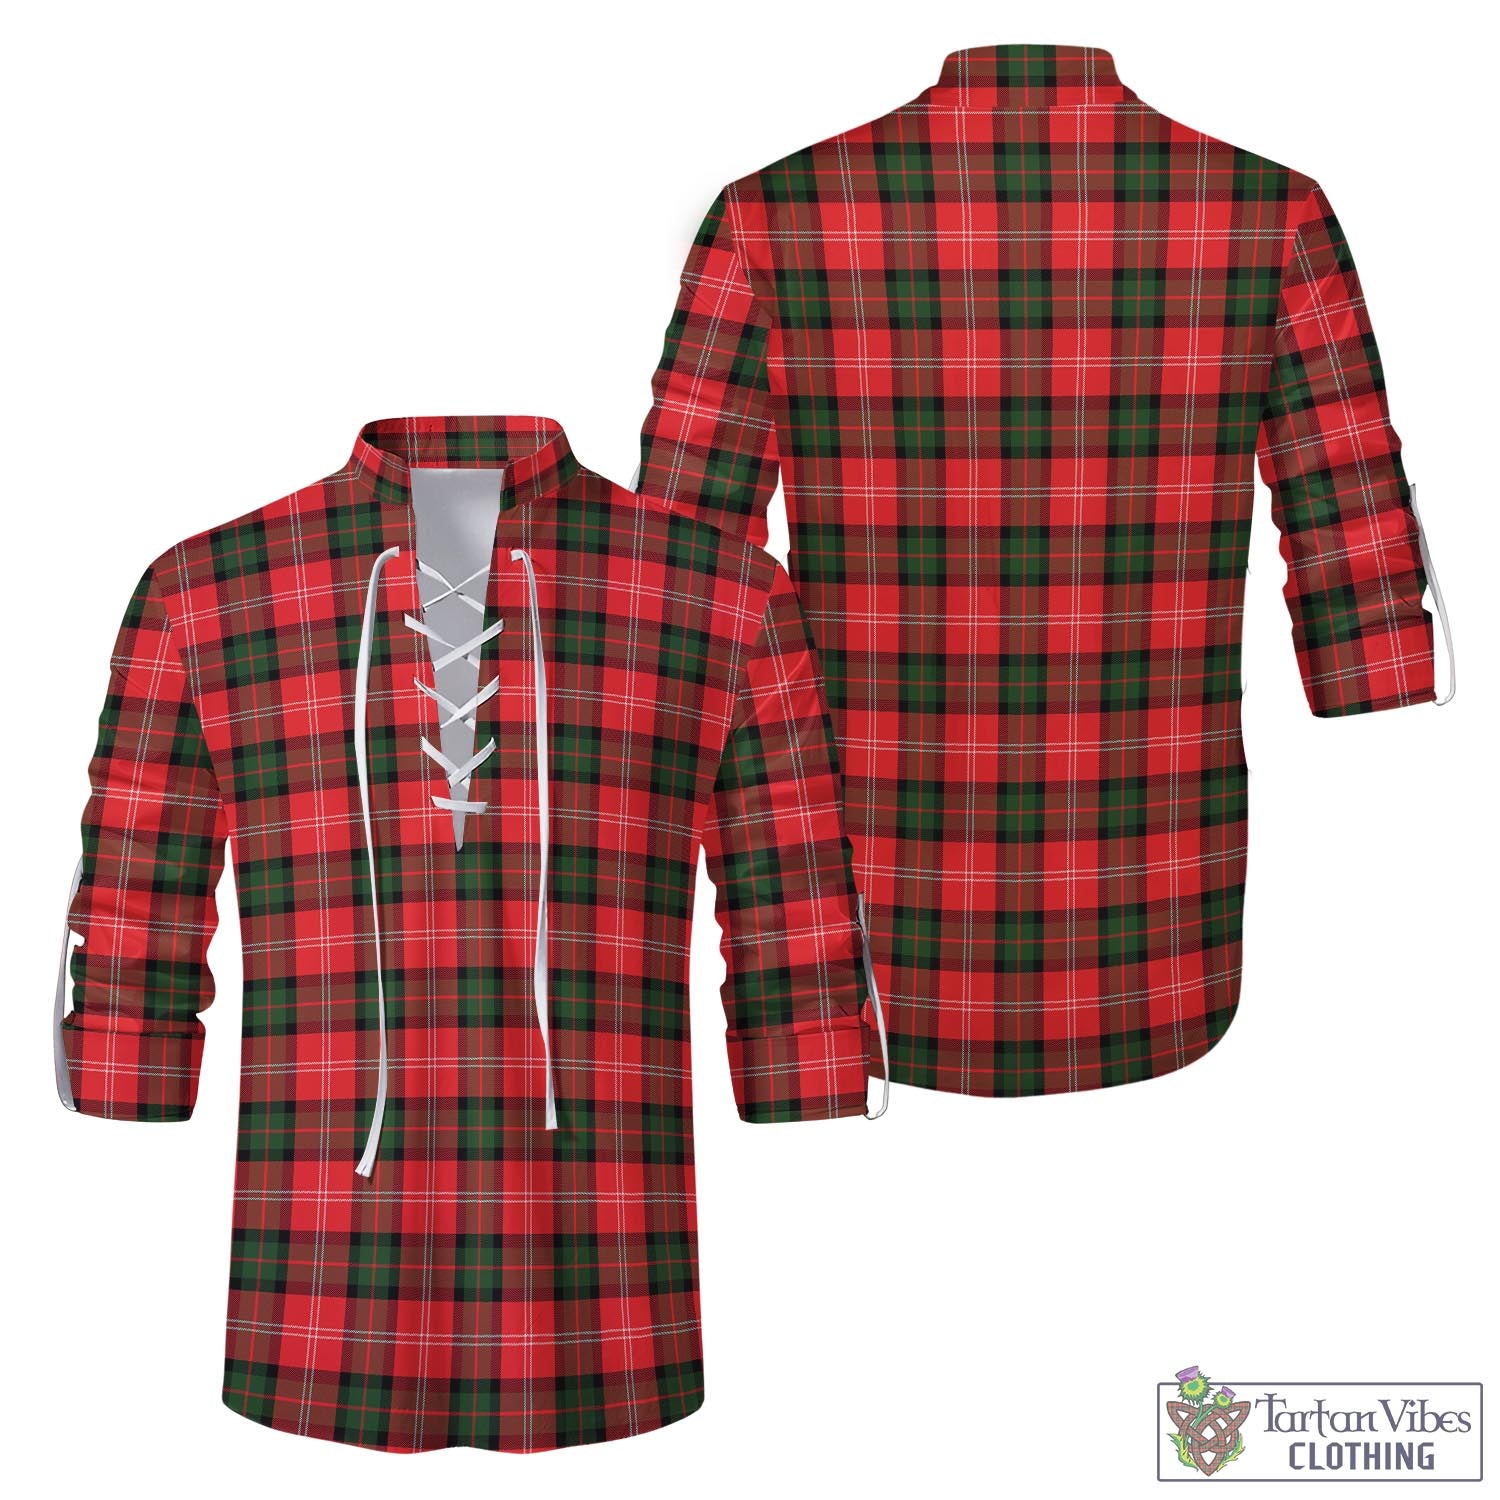 Tartan Vibes Clothing Nesbitt Modern Tartan Men's Scottish Traditional Jacobite Ghillie Kilt Shirt